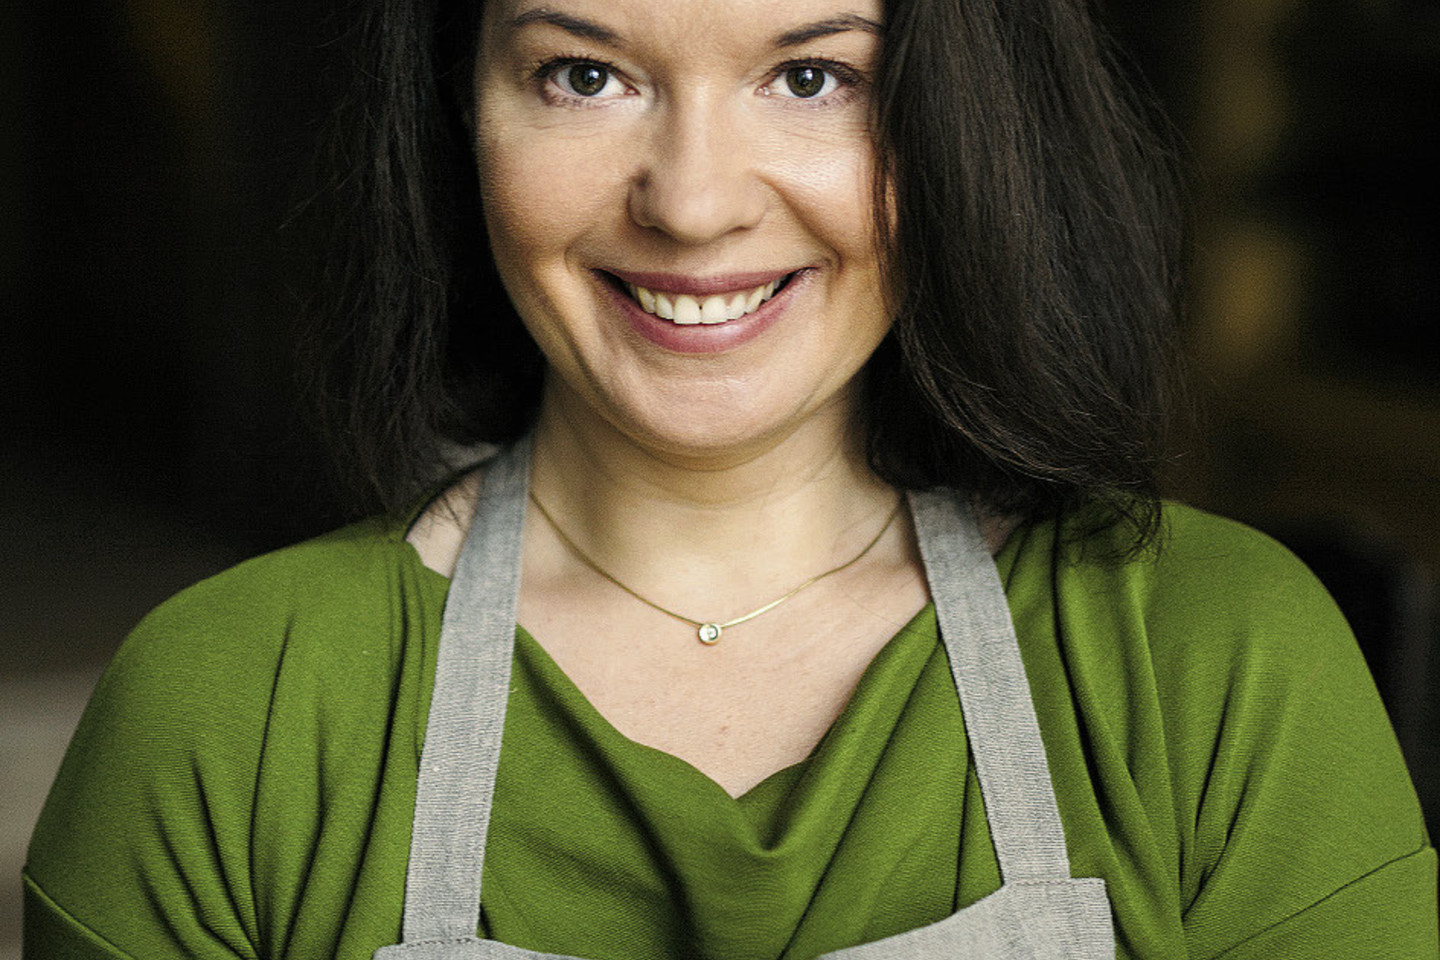 R.Ničajienė – kulinarinių knygų ir tinklaraščio sezoninevirtuve.lt autorė.